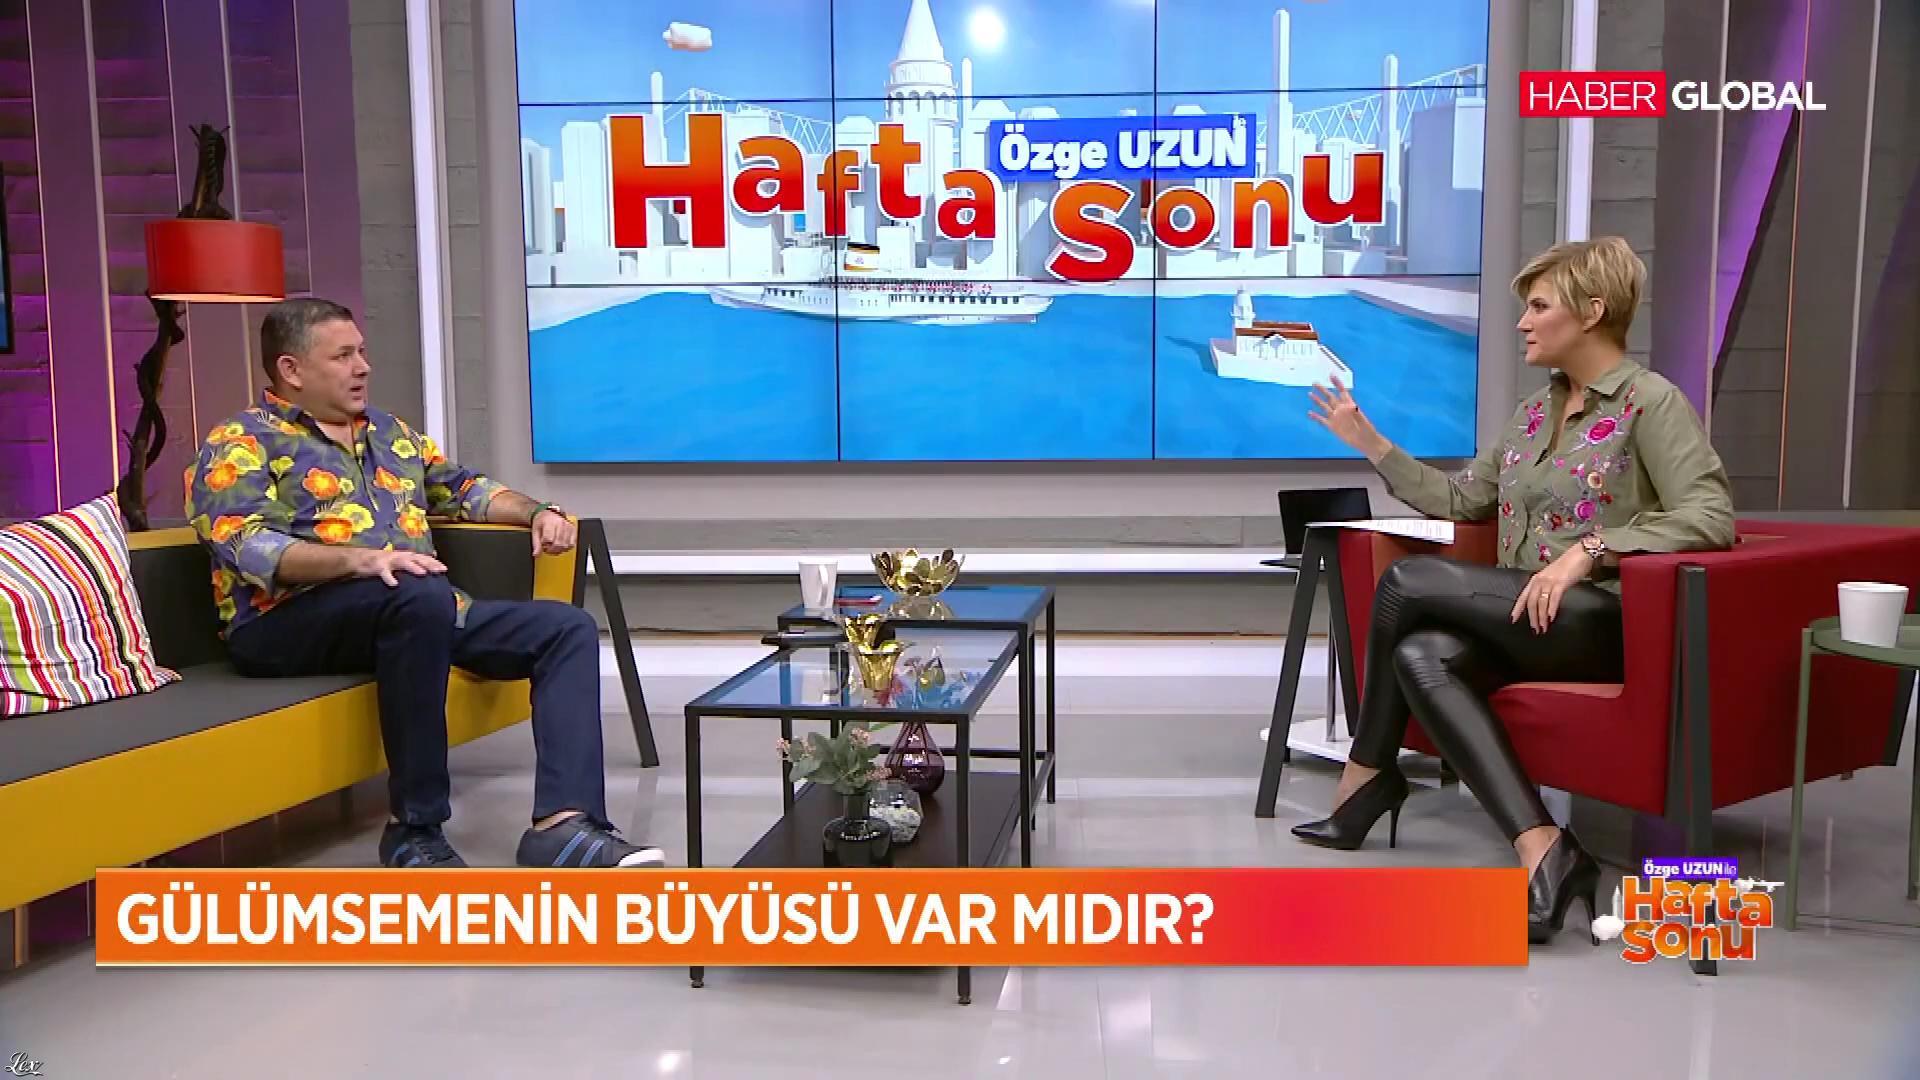 Ozge Uzun dans Ozge Uzun Ile Hafta Sonu. Diffusé à la télévision le 18/11/18.